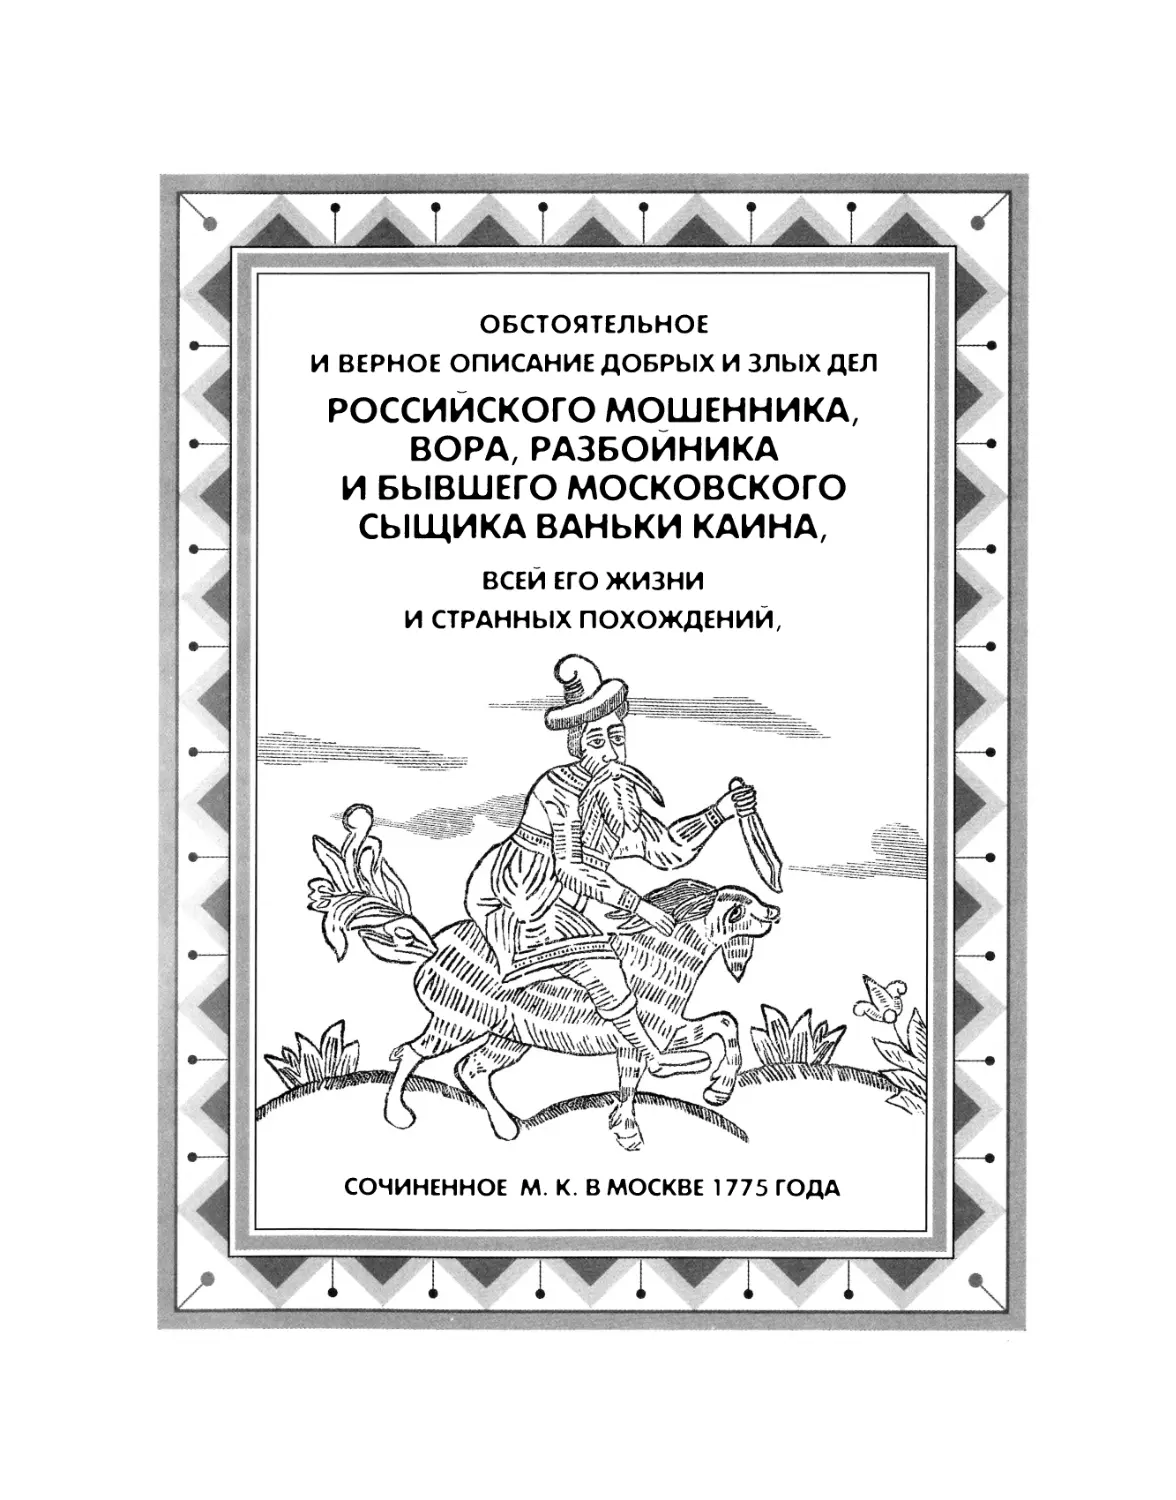 Обстоятельное ... описание ... дел Ваньки Каина..., сочиненное М. К. в Москве 1775 года